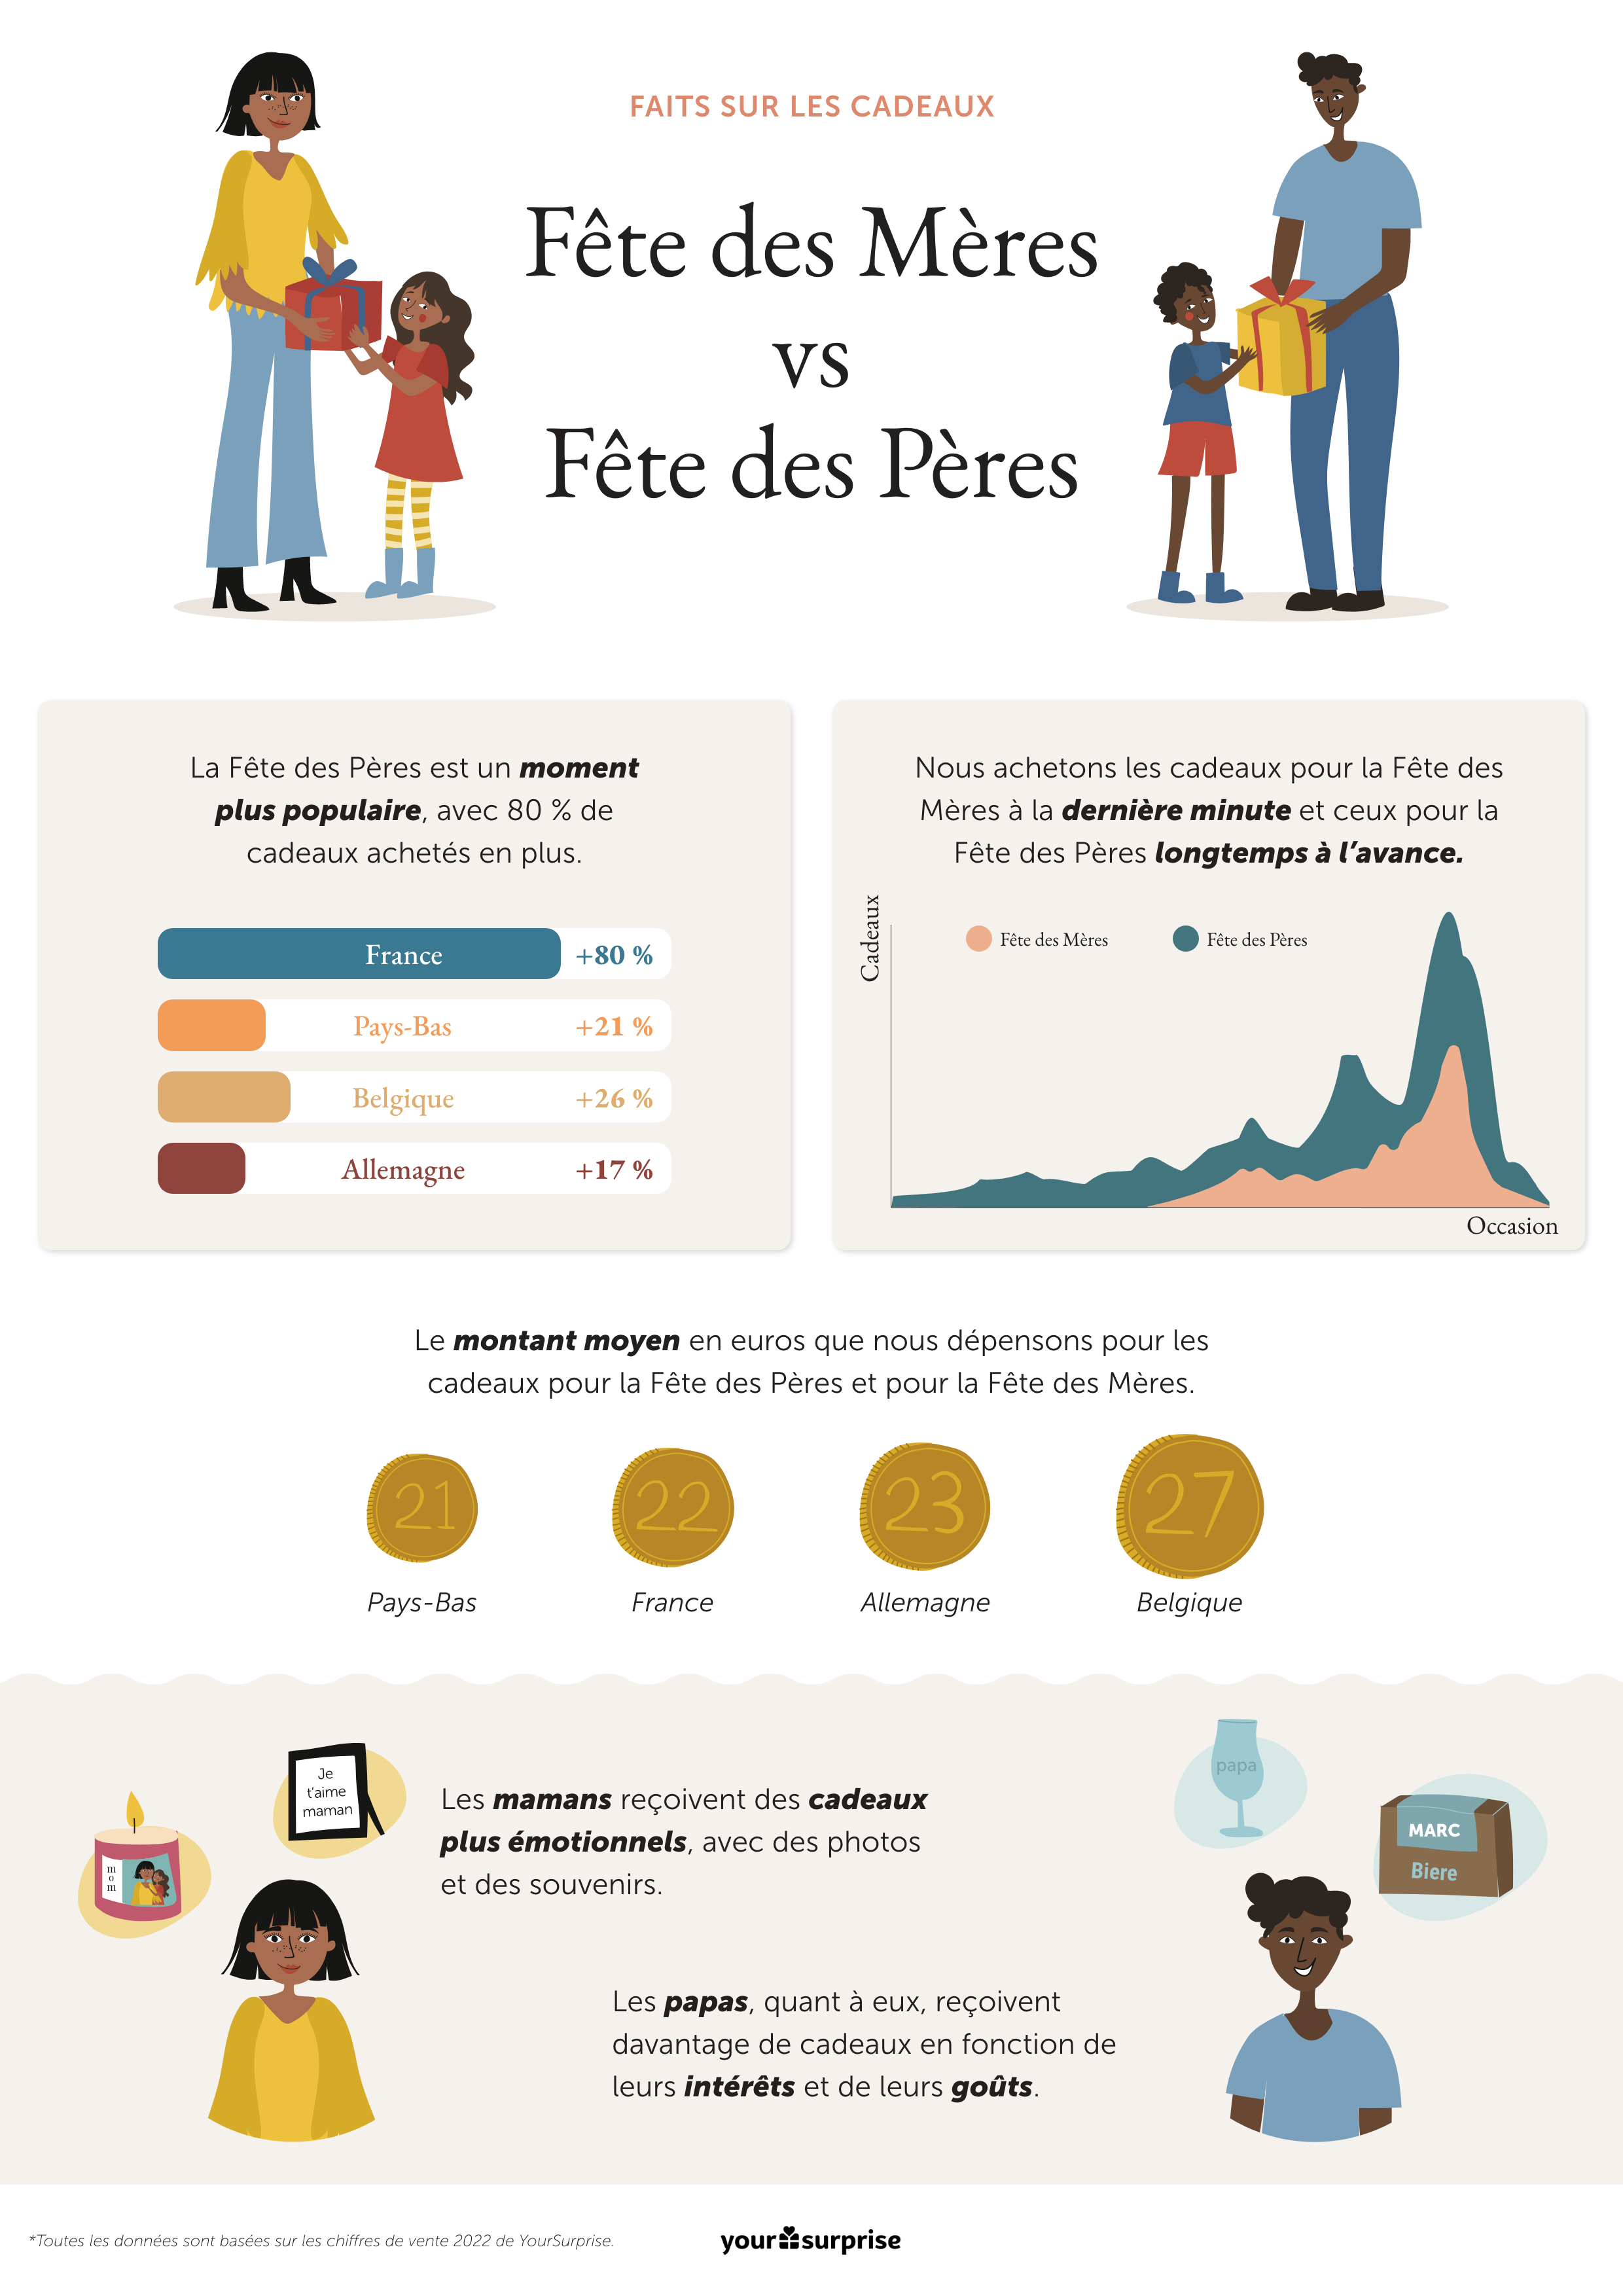 Les Français achètent plus de cadeaux pour la Fête des Pères que pour la Fête des Mères